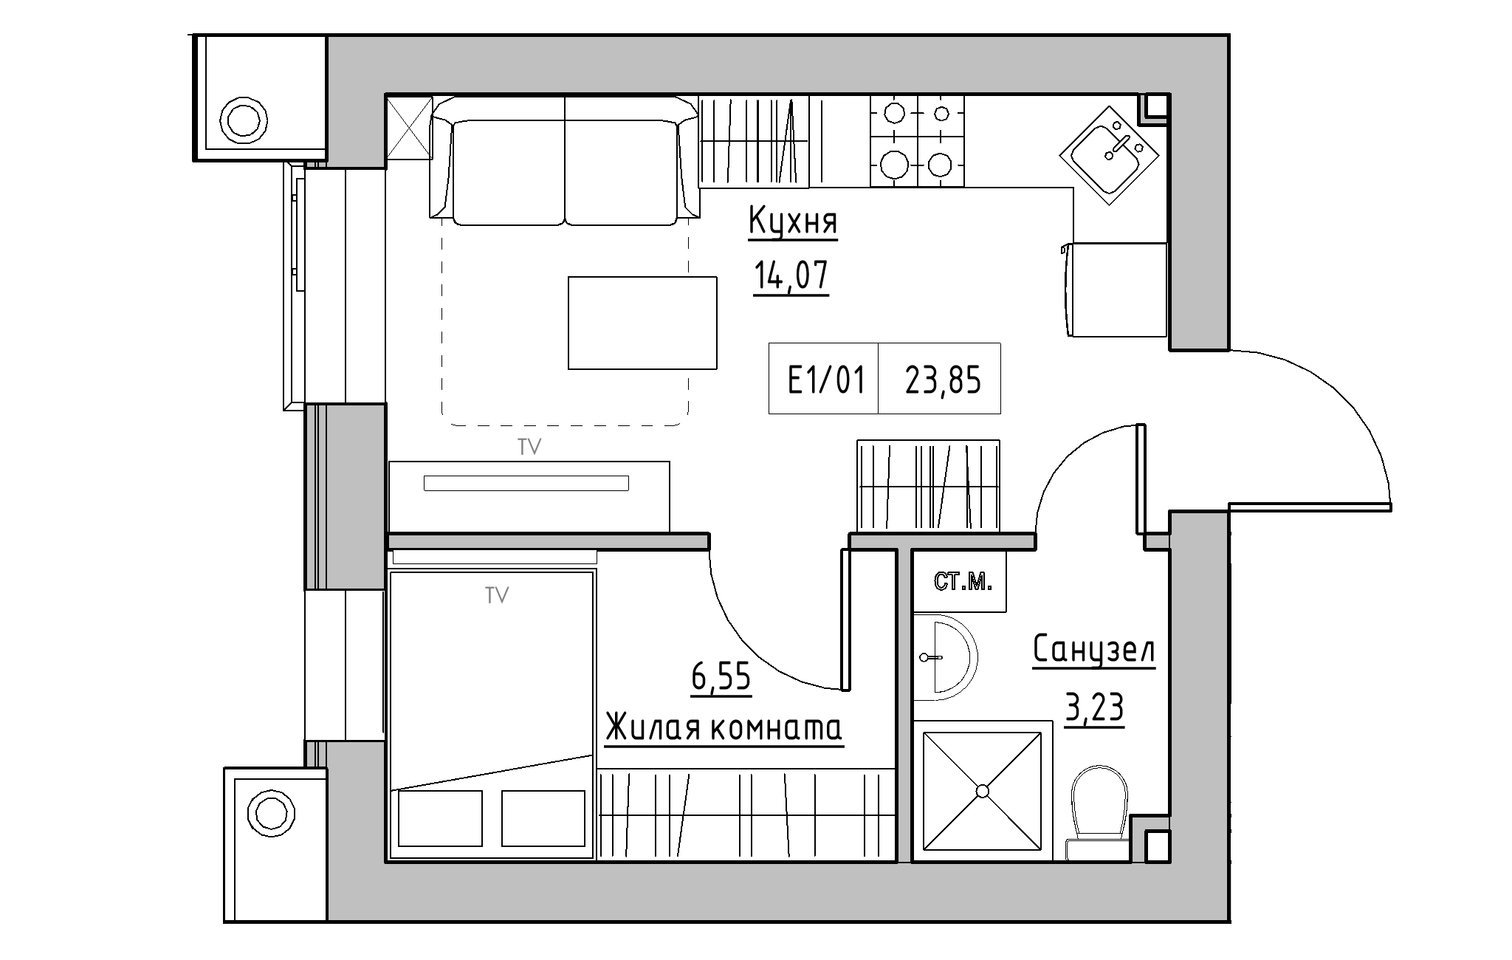 Планування 1-к квартира площею 23.85м2, KS-013-03/0003.